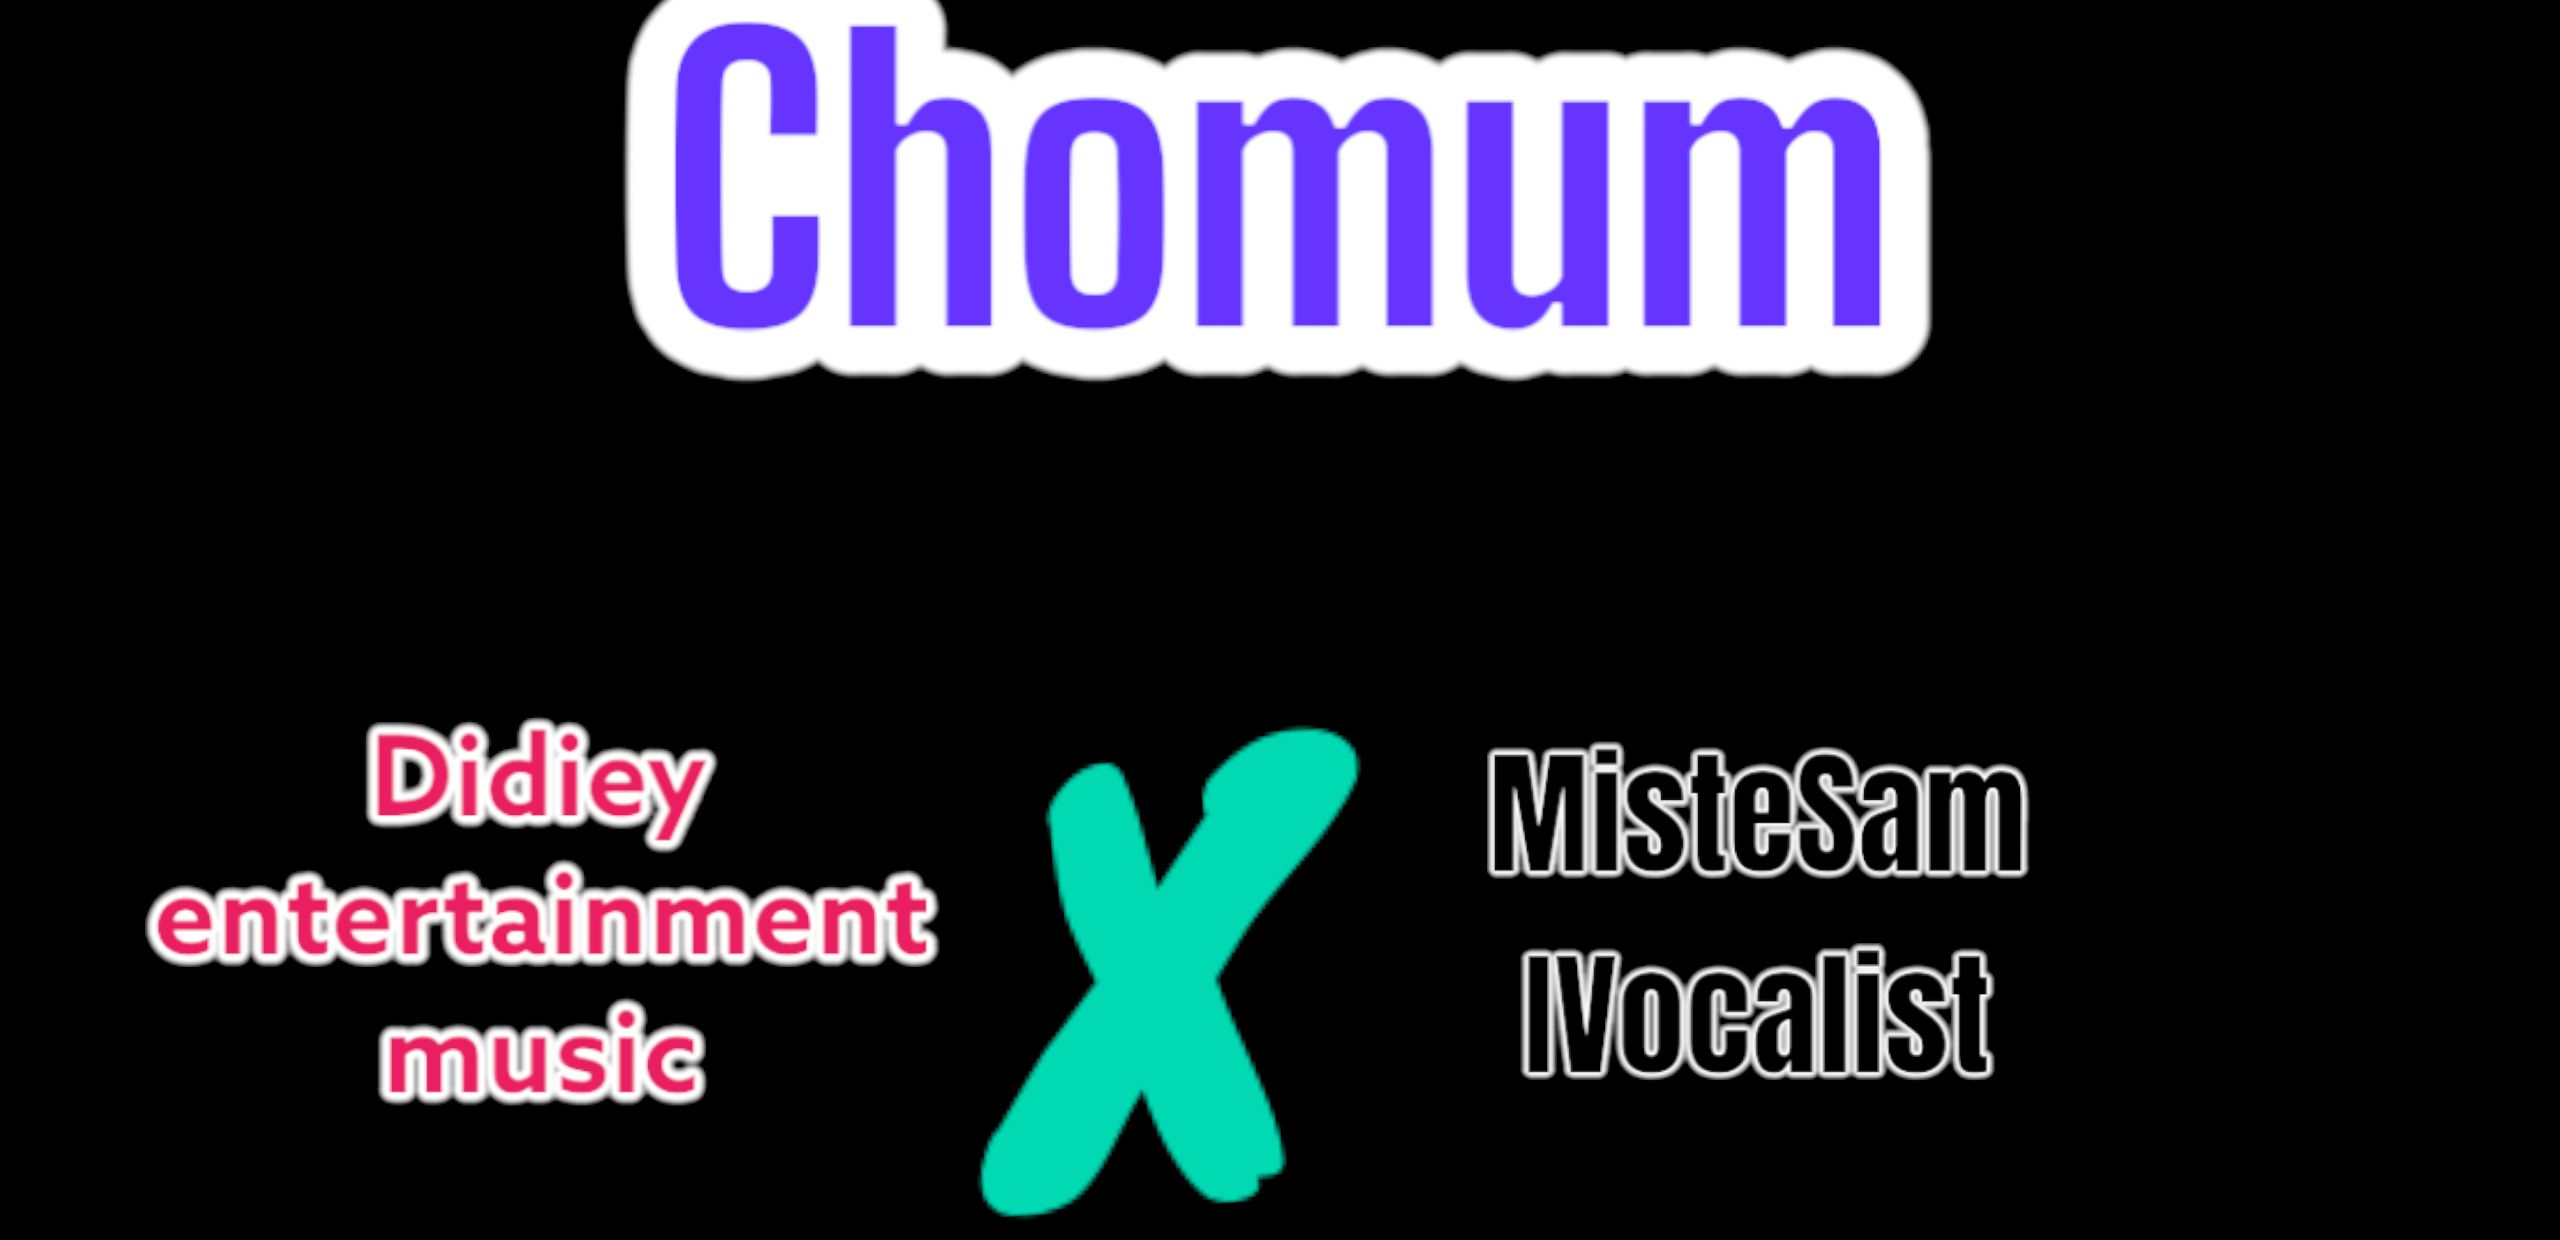 Chomum - MisteSam IVocalist & Didiey entertainment music